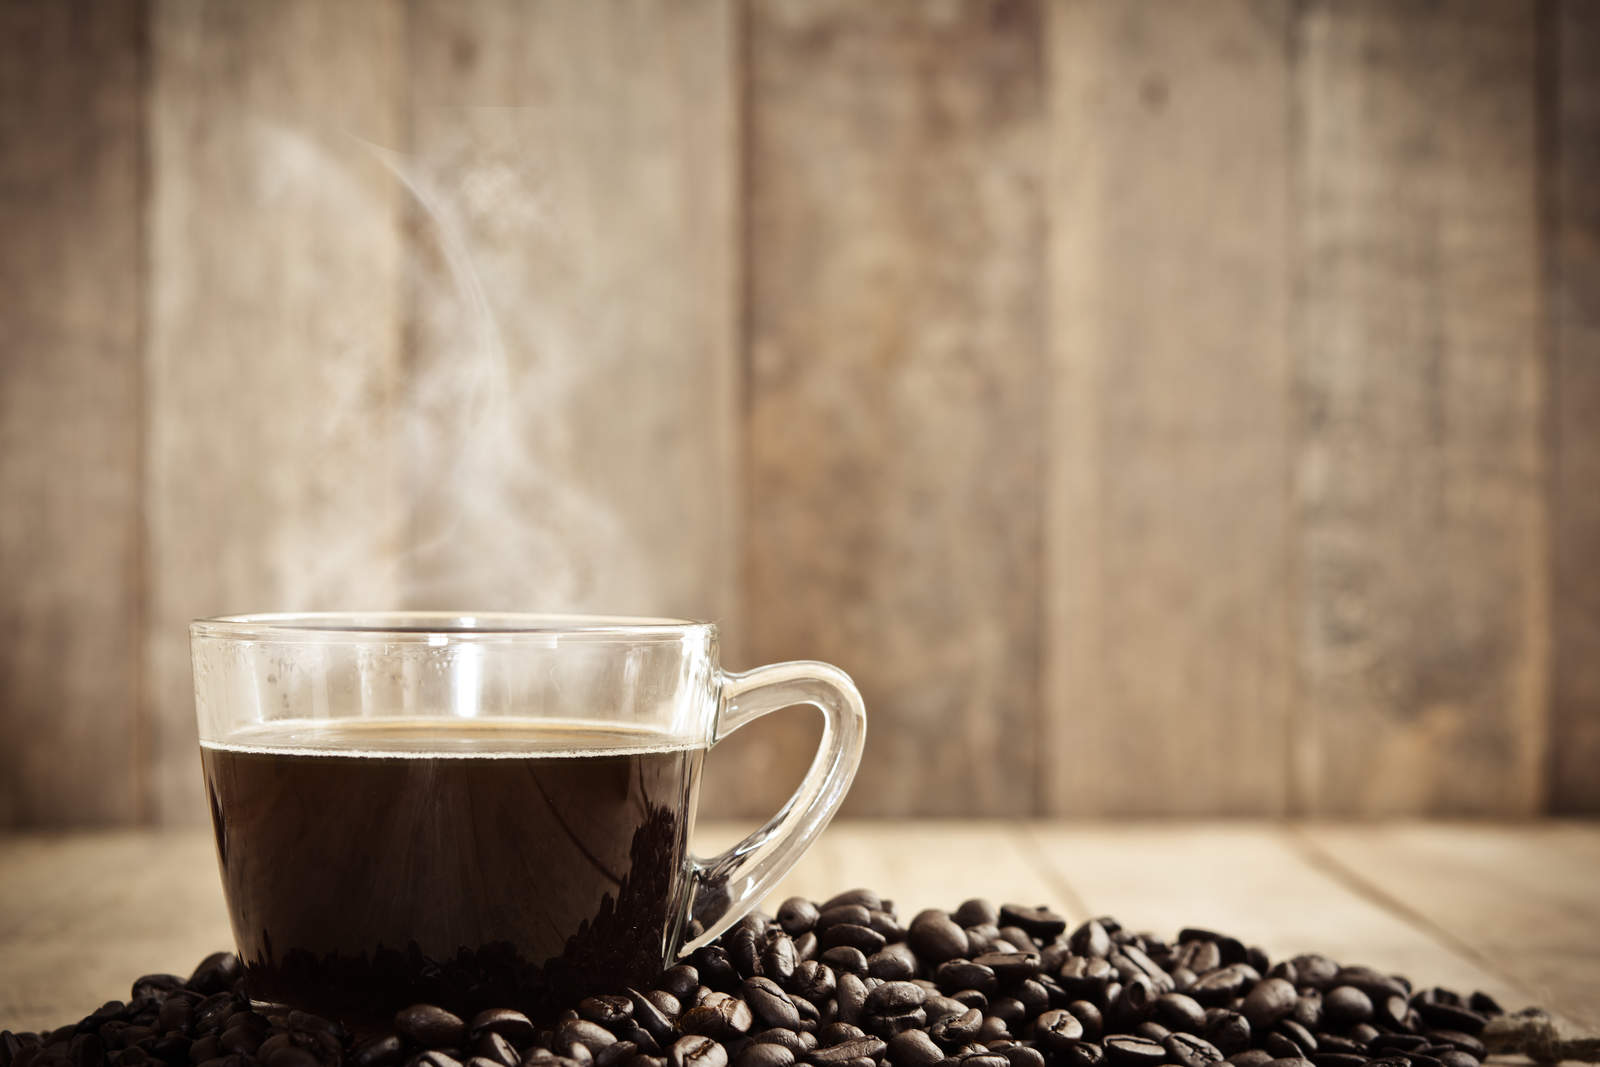 Zâmbia abre suas portas para o café brasileiro uma nova era nas relações comerciais